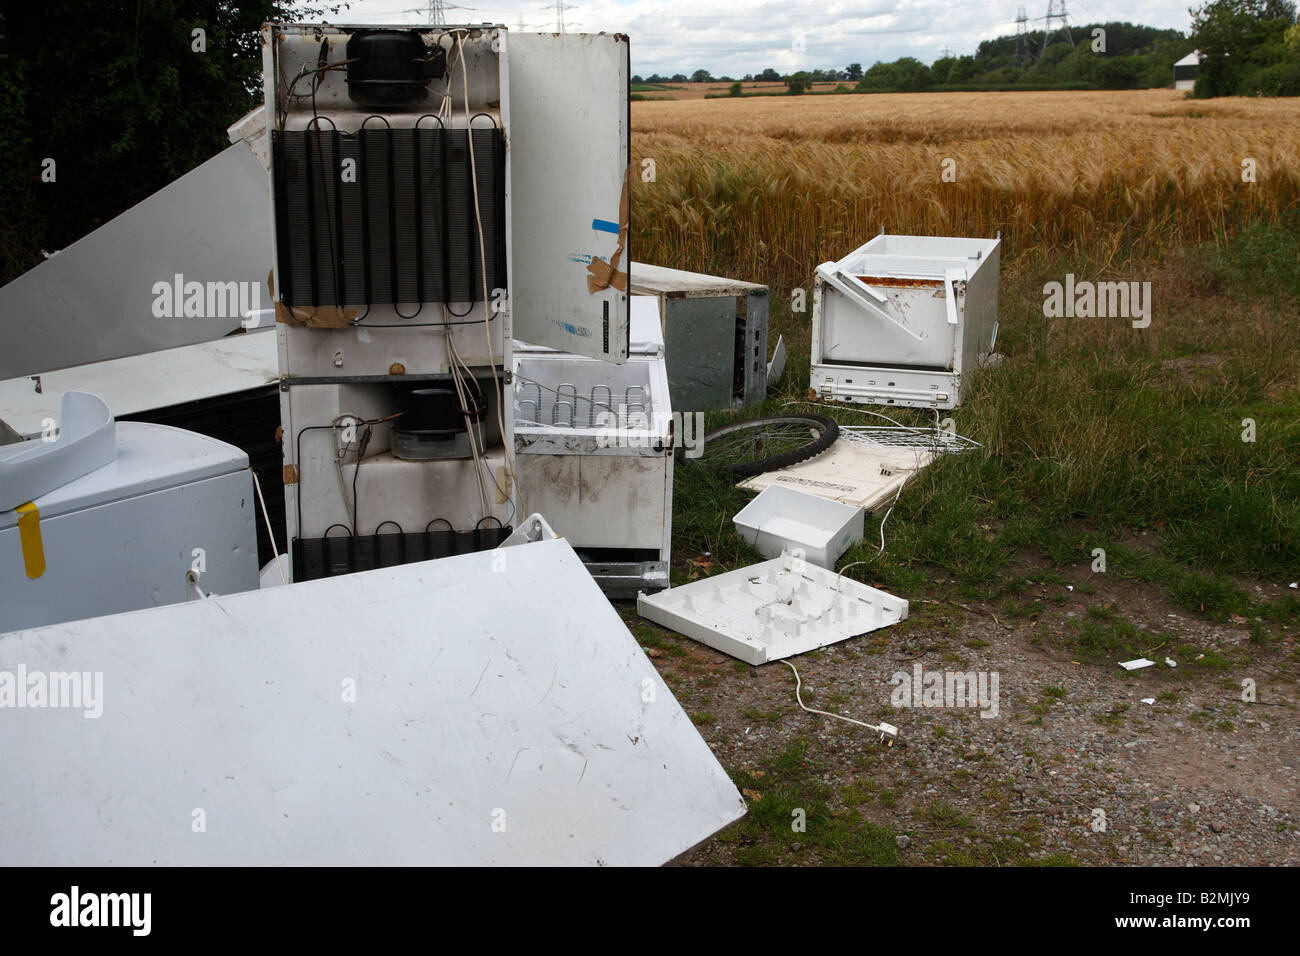 Vecchi frigoriferi oggetto di dumping nella campagna appena fuori dal villaggio di trysull south staffordshire England Regno Unito Foto Stock